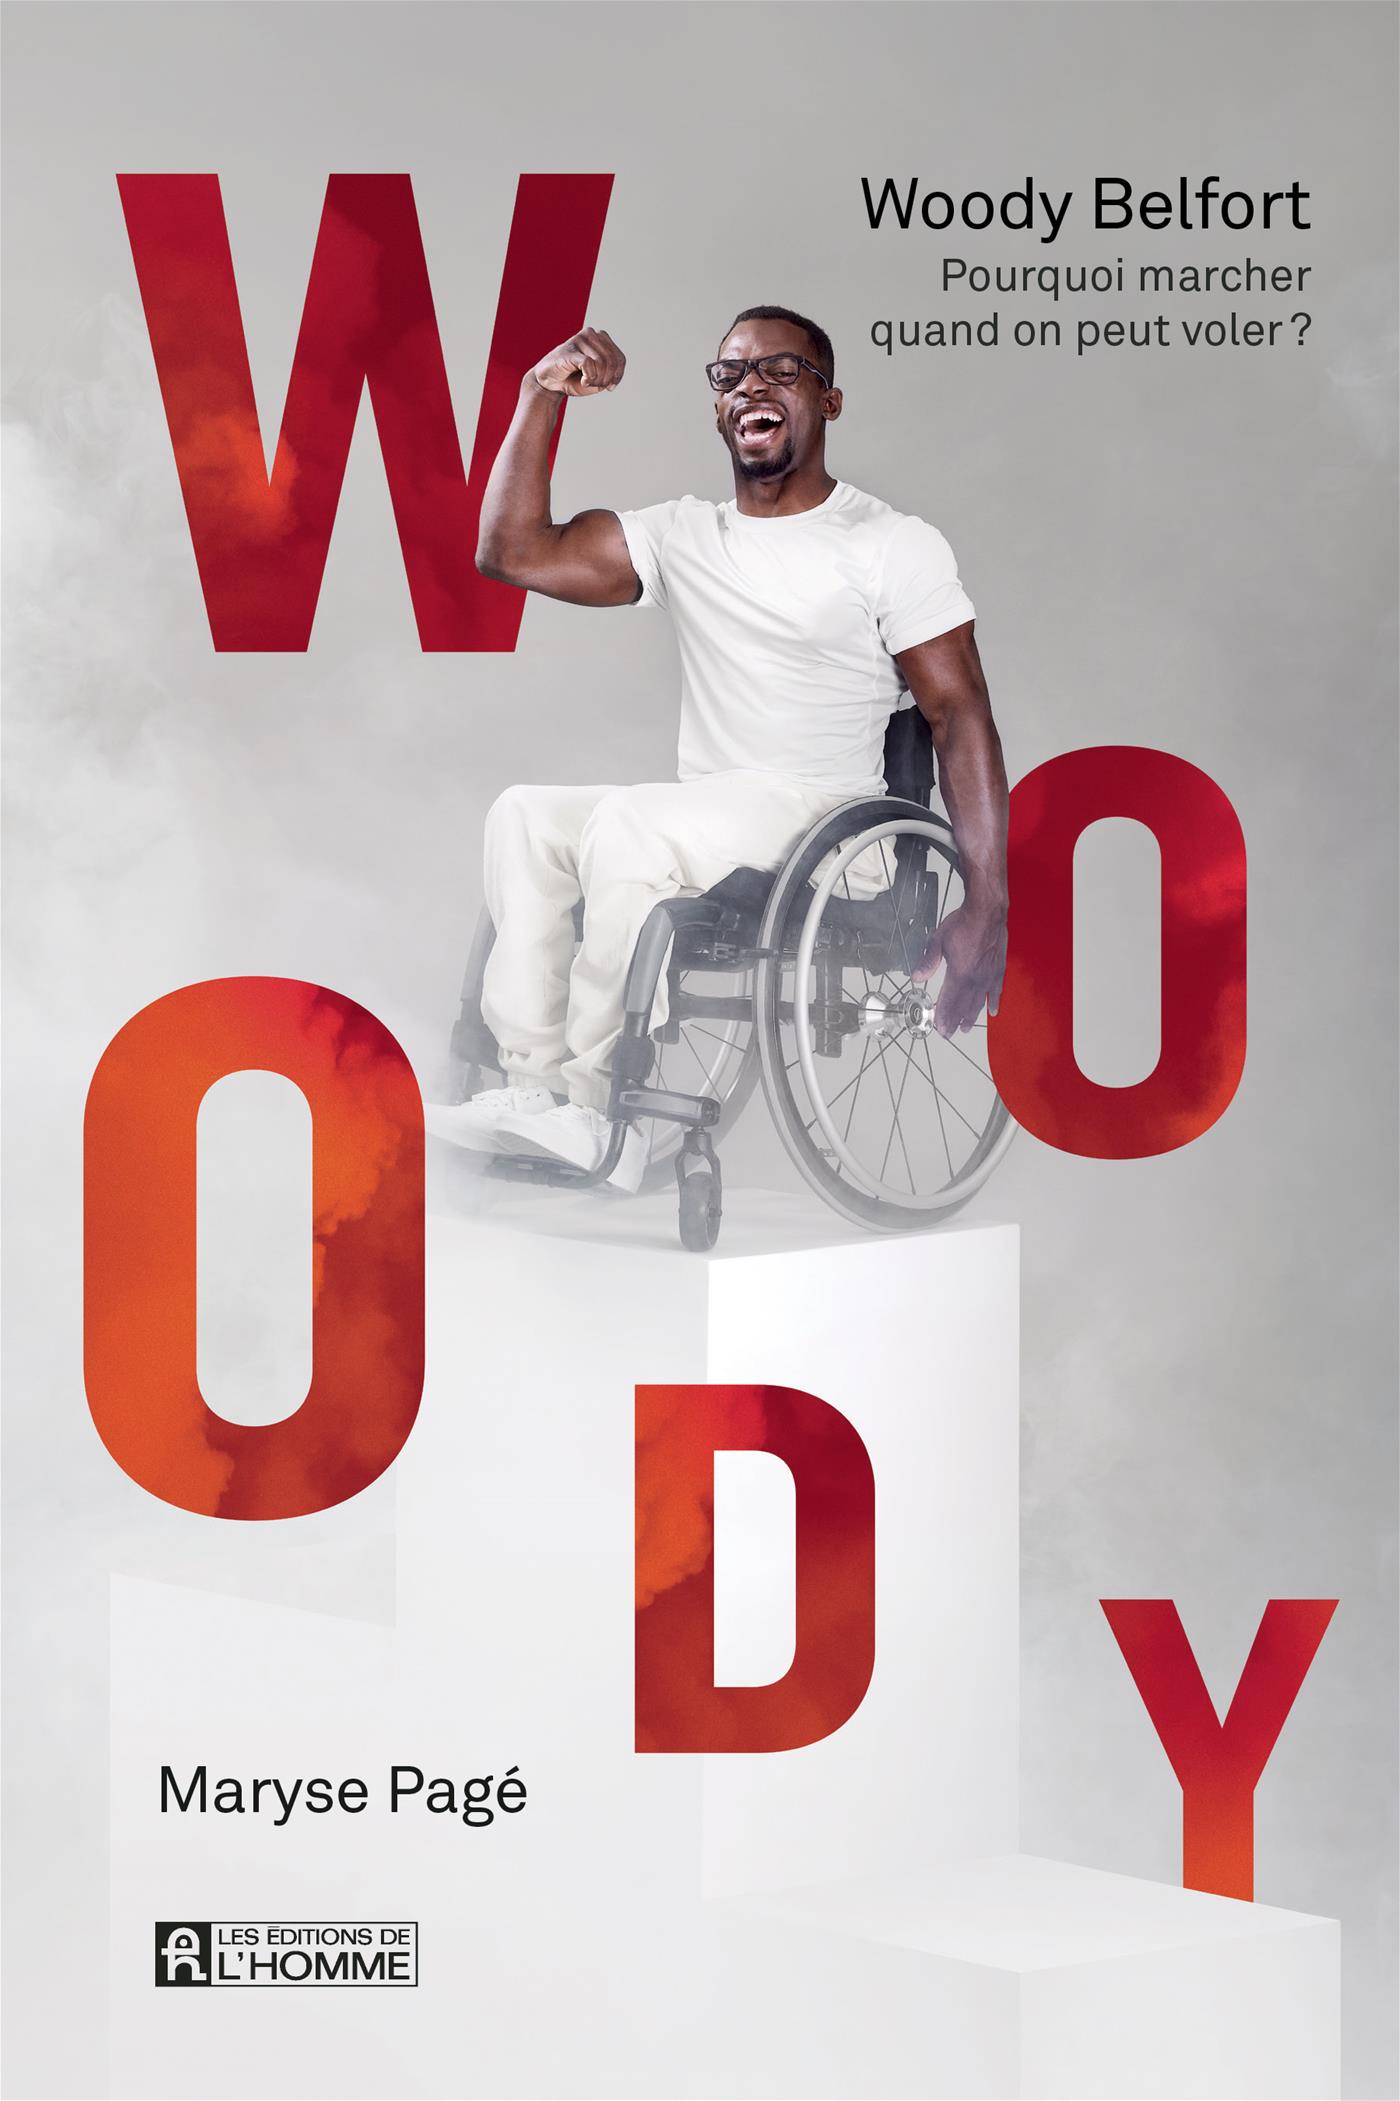 La couverture du livre montre Woody Belfort sur son fauteuil roulant, habillé de blanc, qui prend une pose victorieuse.